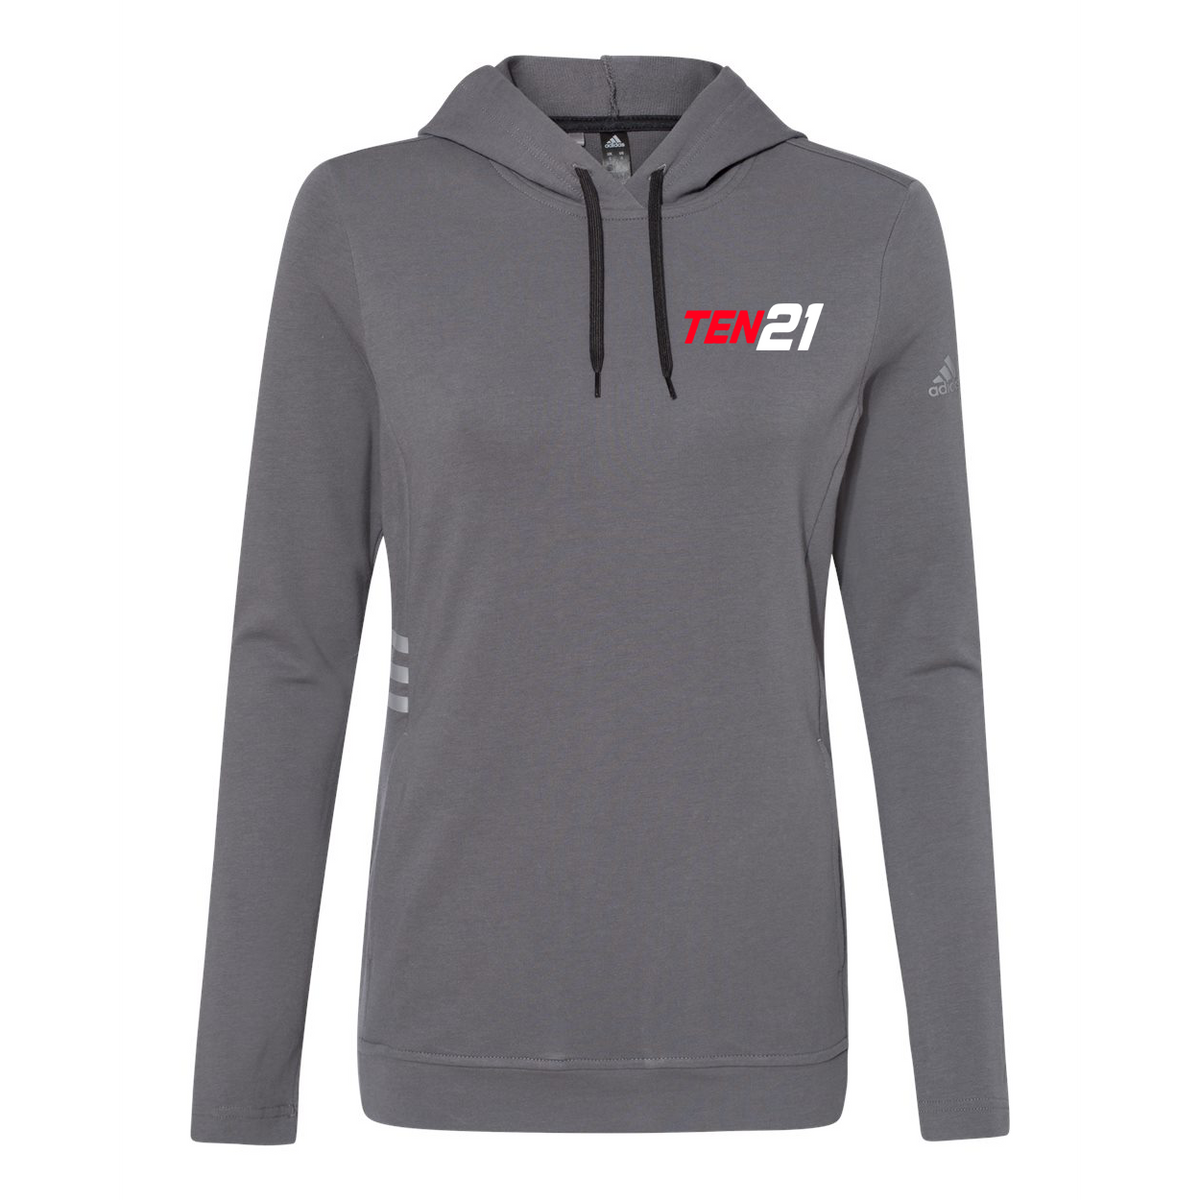 TEN21 Lacrosse Adidas Women's Sweatshirt